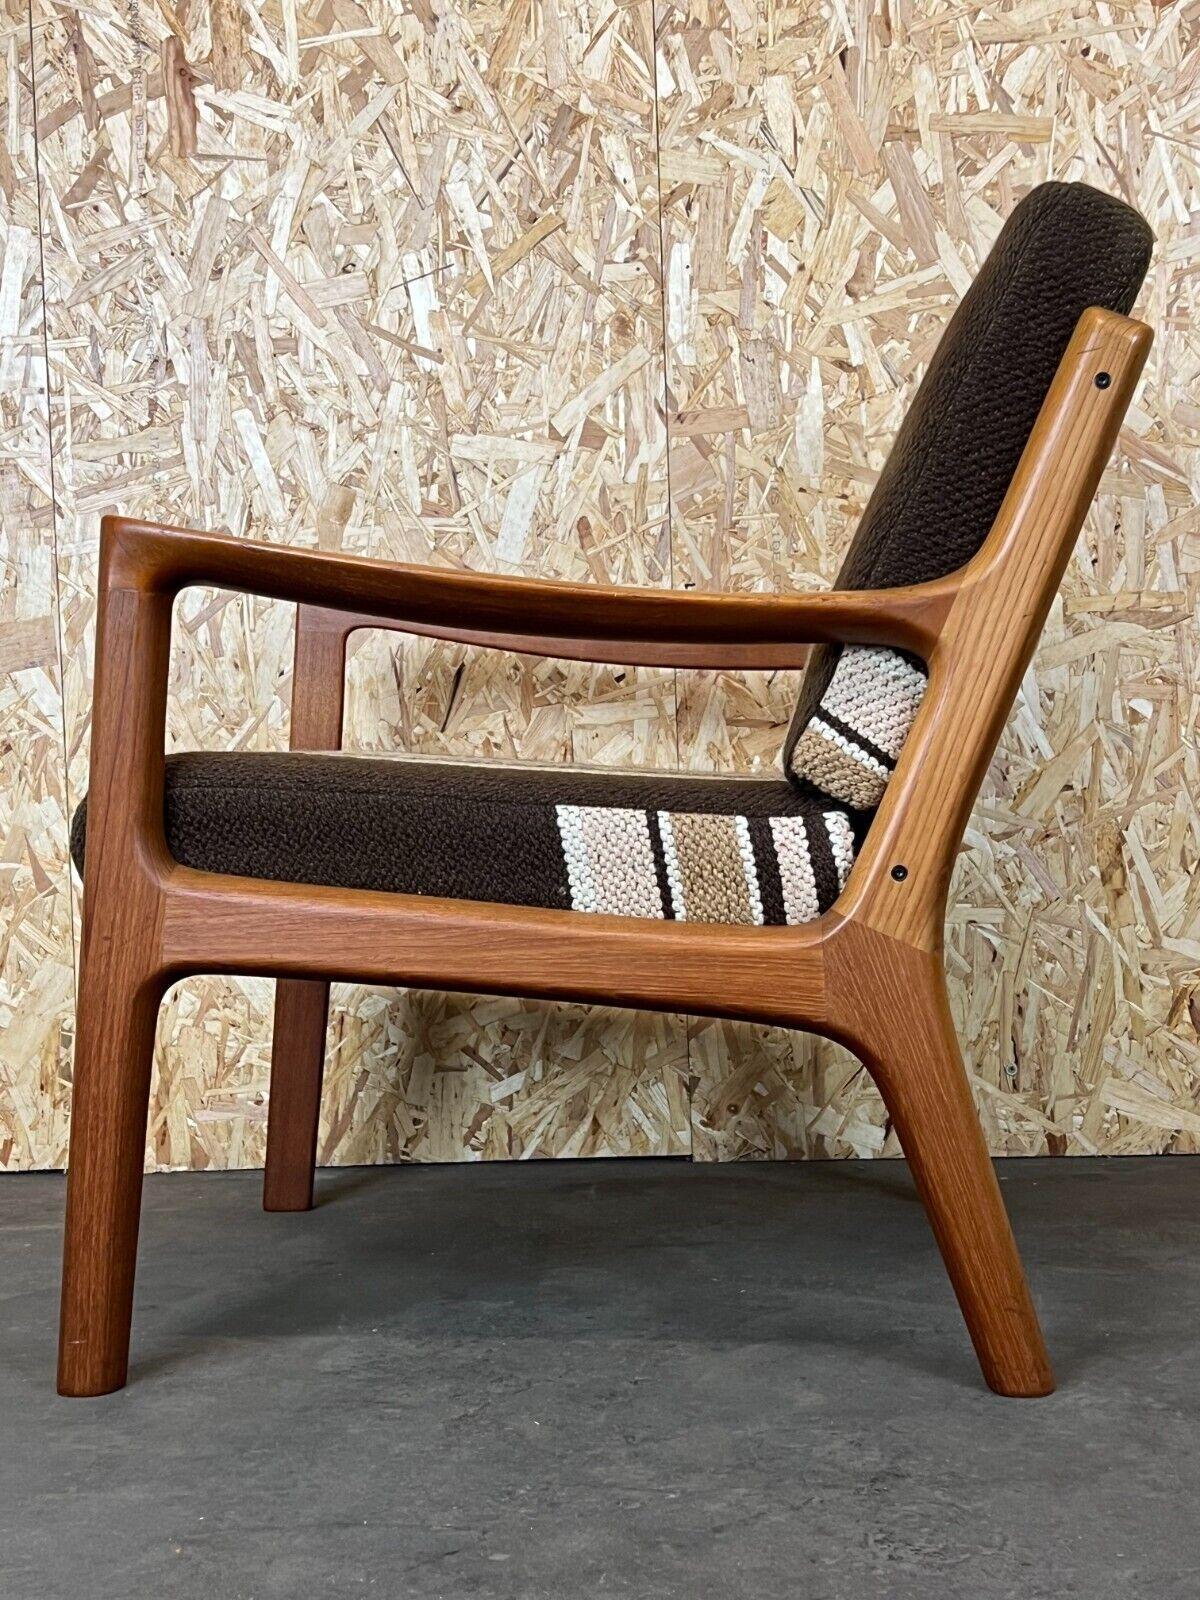 1960s-1970s Teak Easy Chair Ole Wanscher Cado France & Son Denmark 11